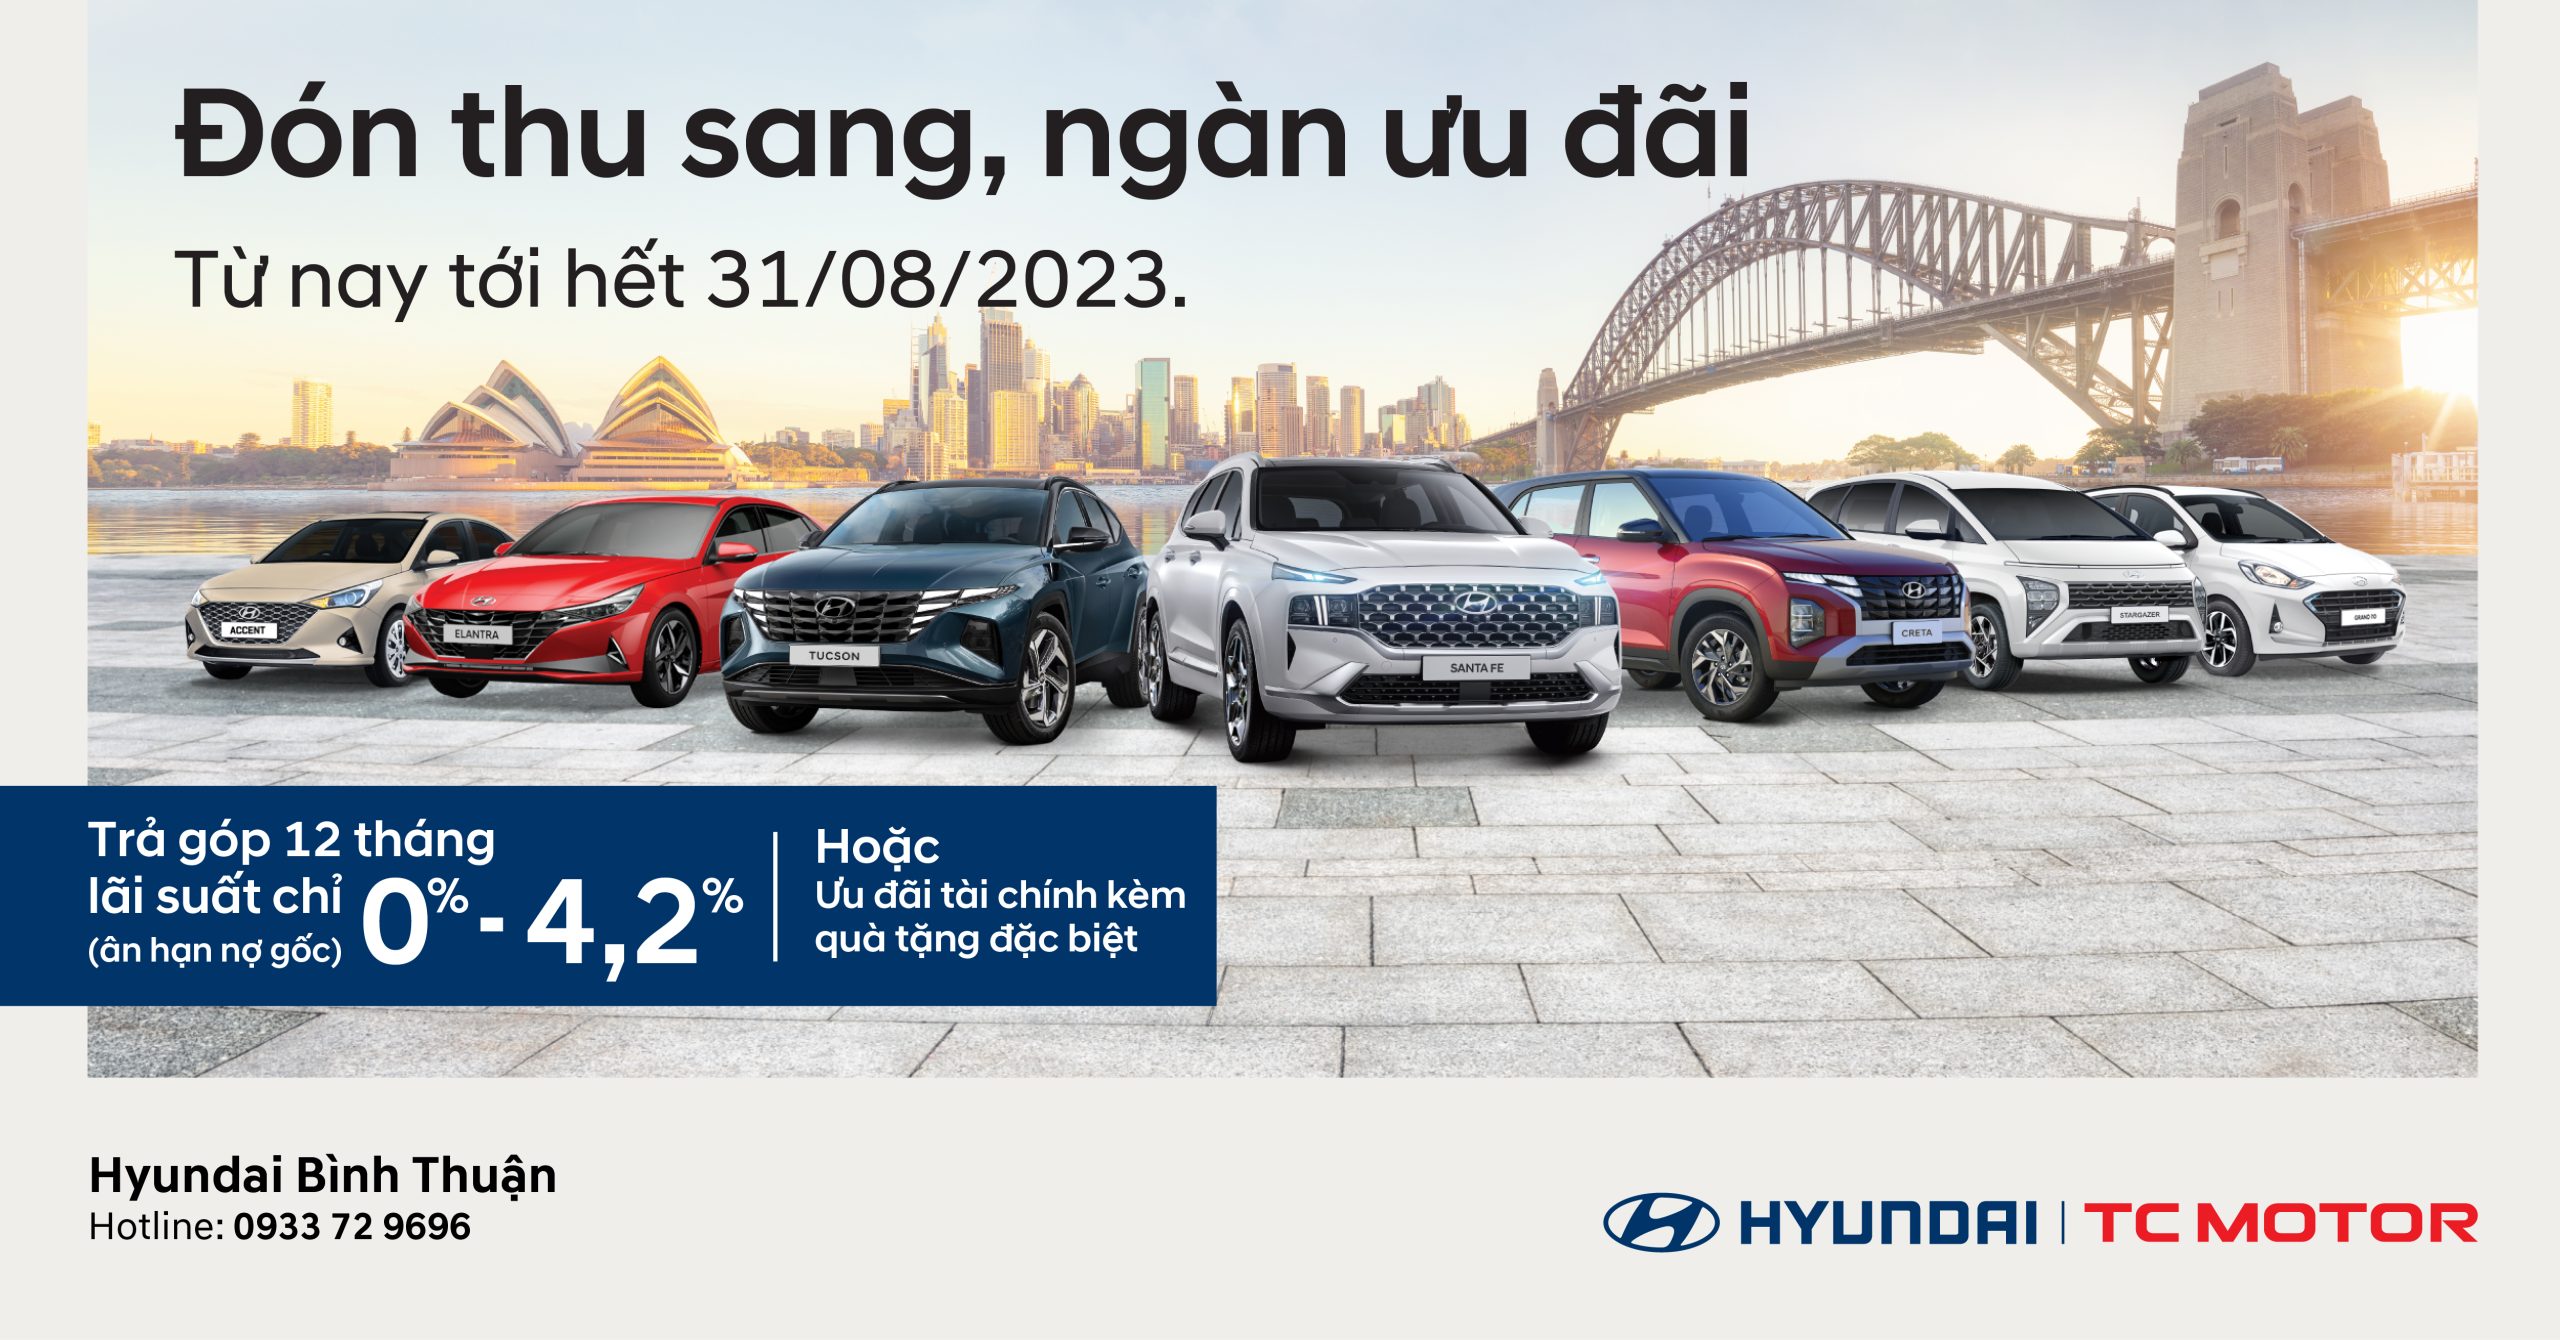 Đón thu sang - Ngàn ưu đãi Hyundai Bình Thuận